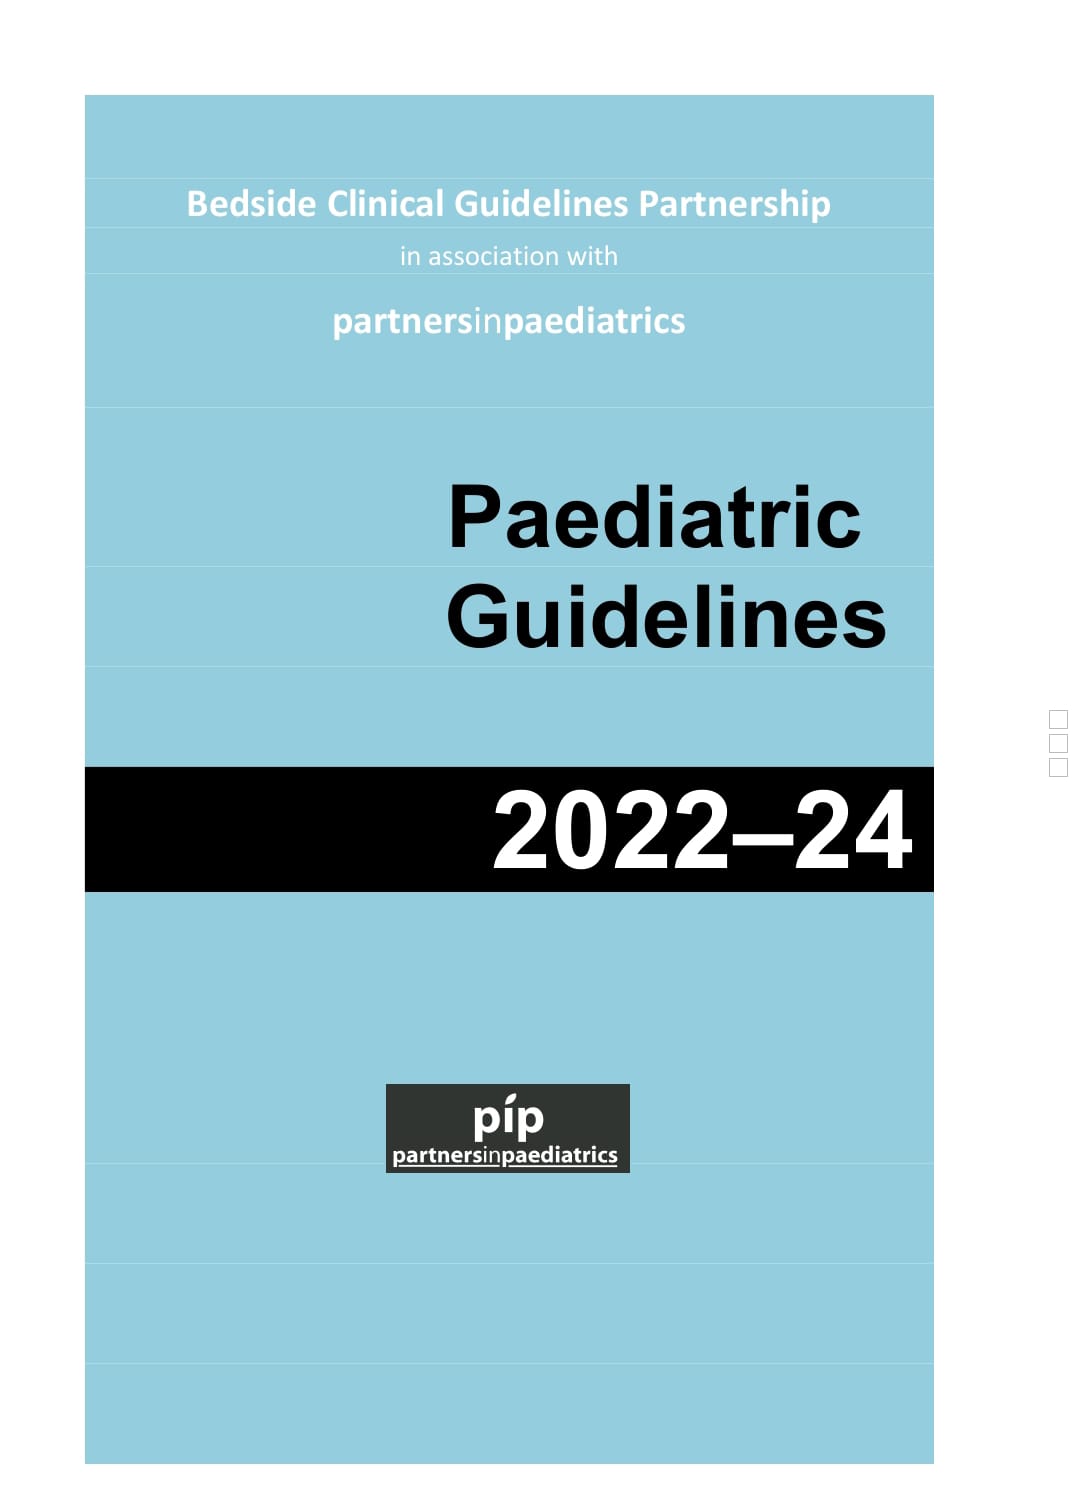 paediatric guidelines 2022-24